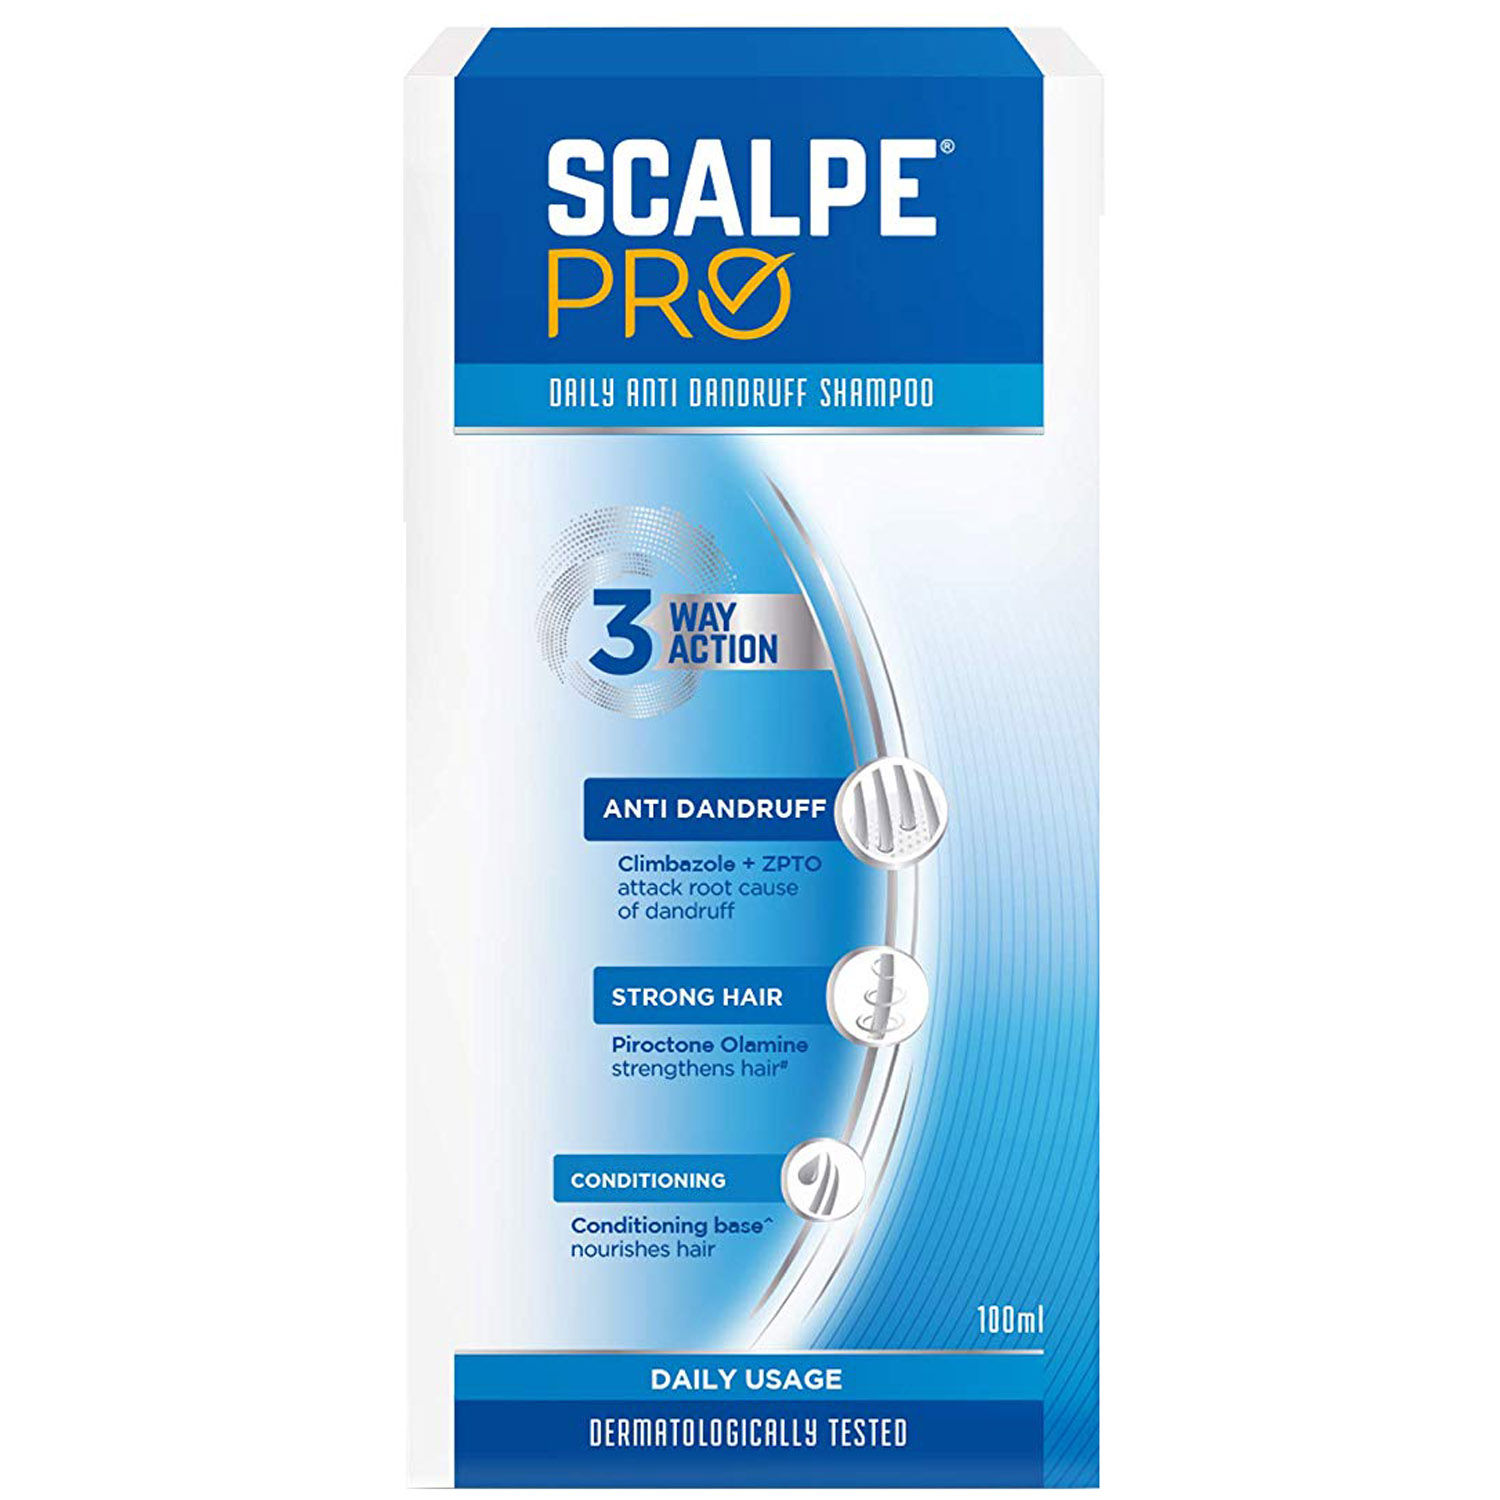 Scalpe Pro Daily Anti Dandruff Shampoo, 100 ml, Pack of 1 